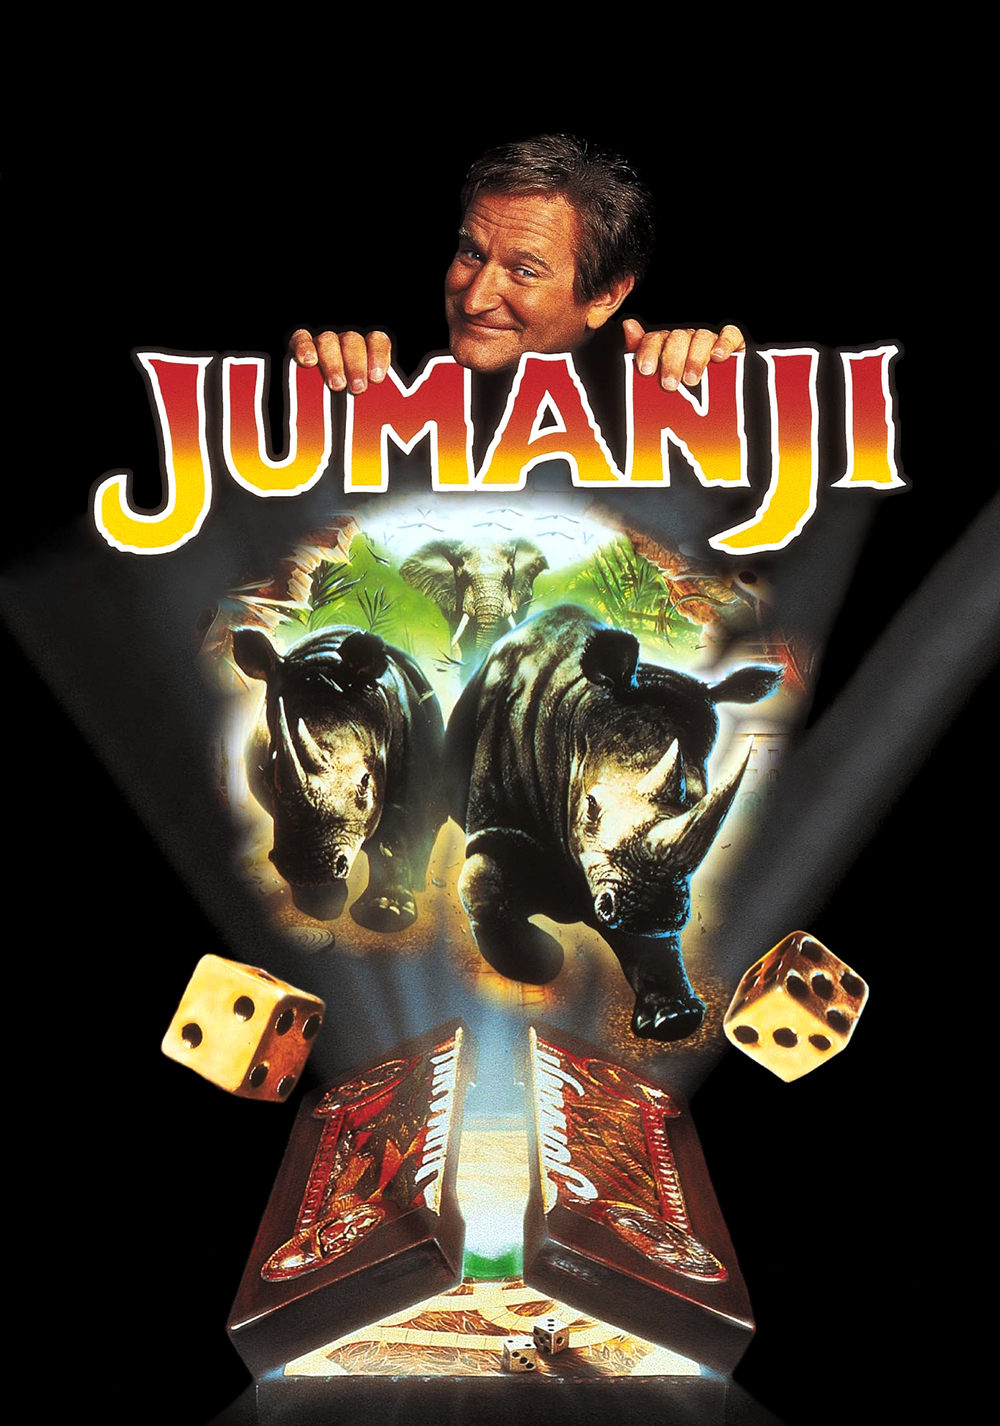 Jumanji (1995) Poster - Jumanji Photo (40536729) - Fanpop